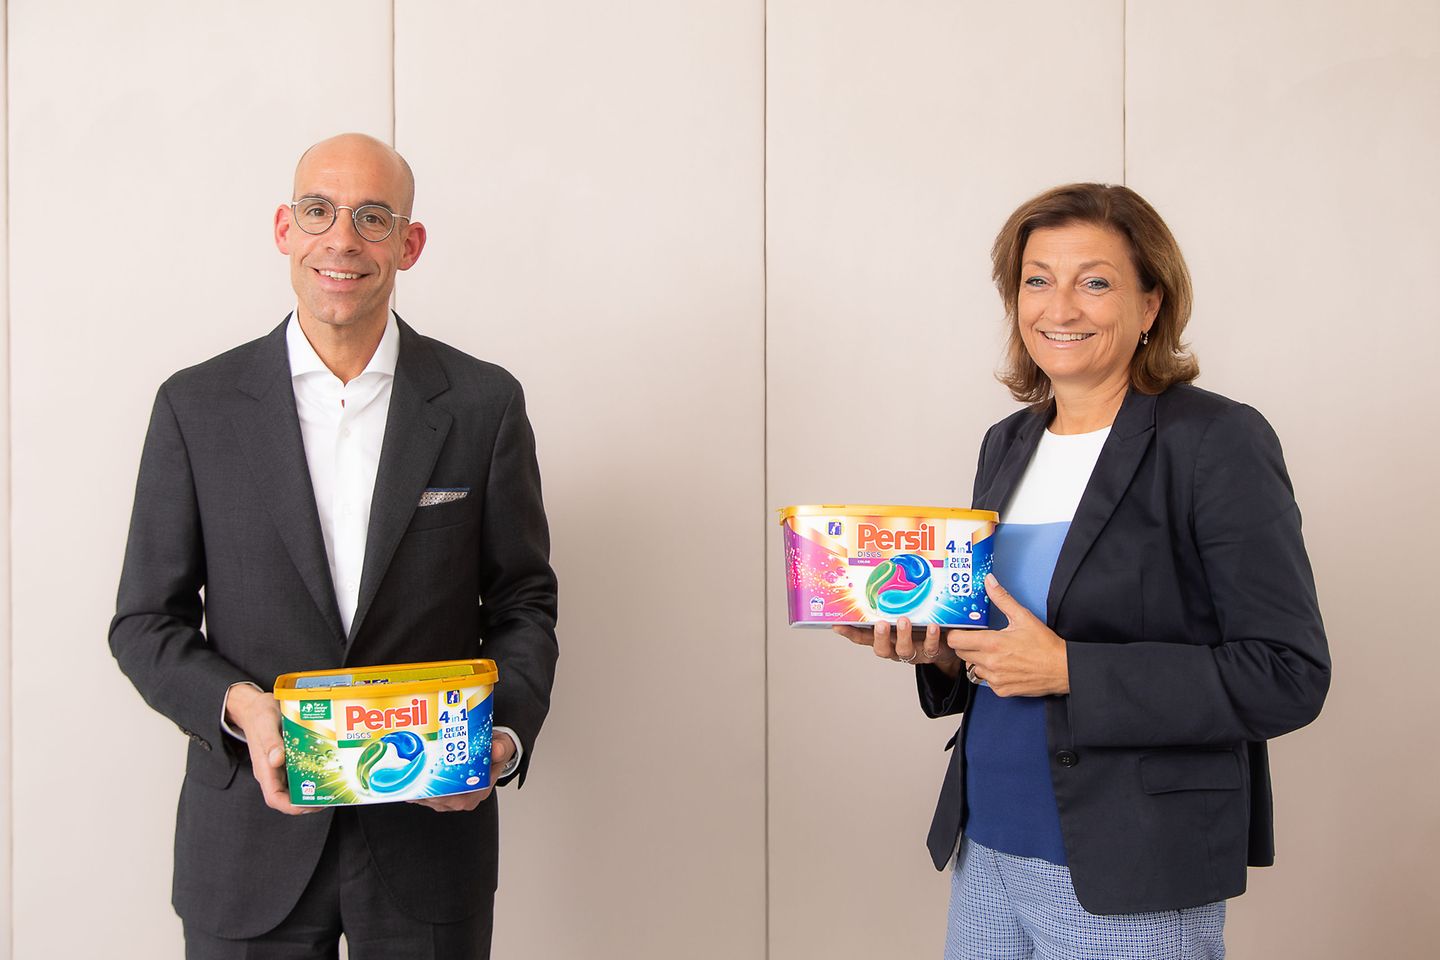 Freuen sich über den Green Packaging Award 2020 für die Persil 4in1 Discs-Verpackung: Axel Kühner, CEO der Greiner AG, und Birgit Rechberger-Krammer, Präsidentin Henkel in Österreich